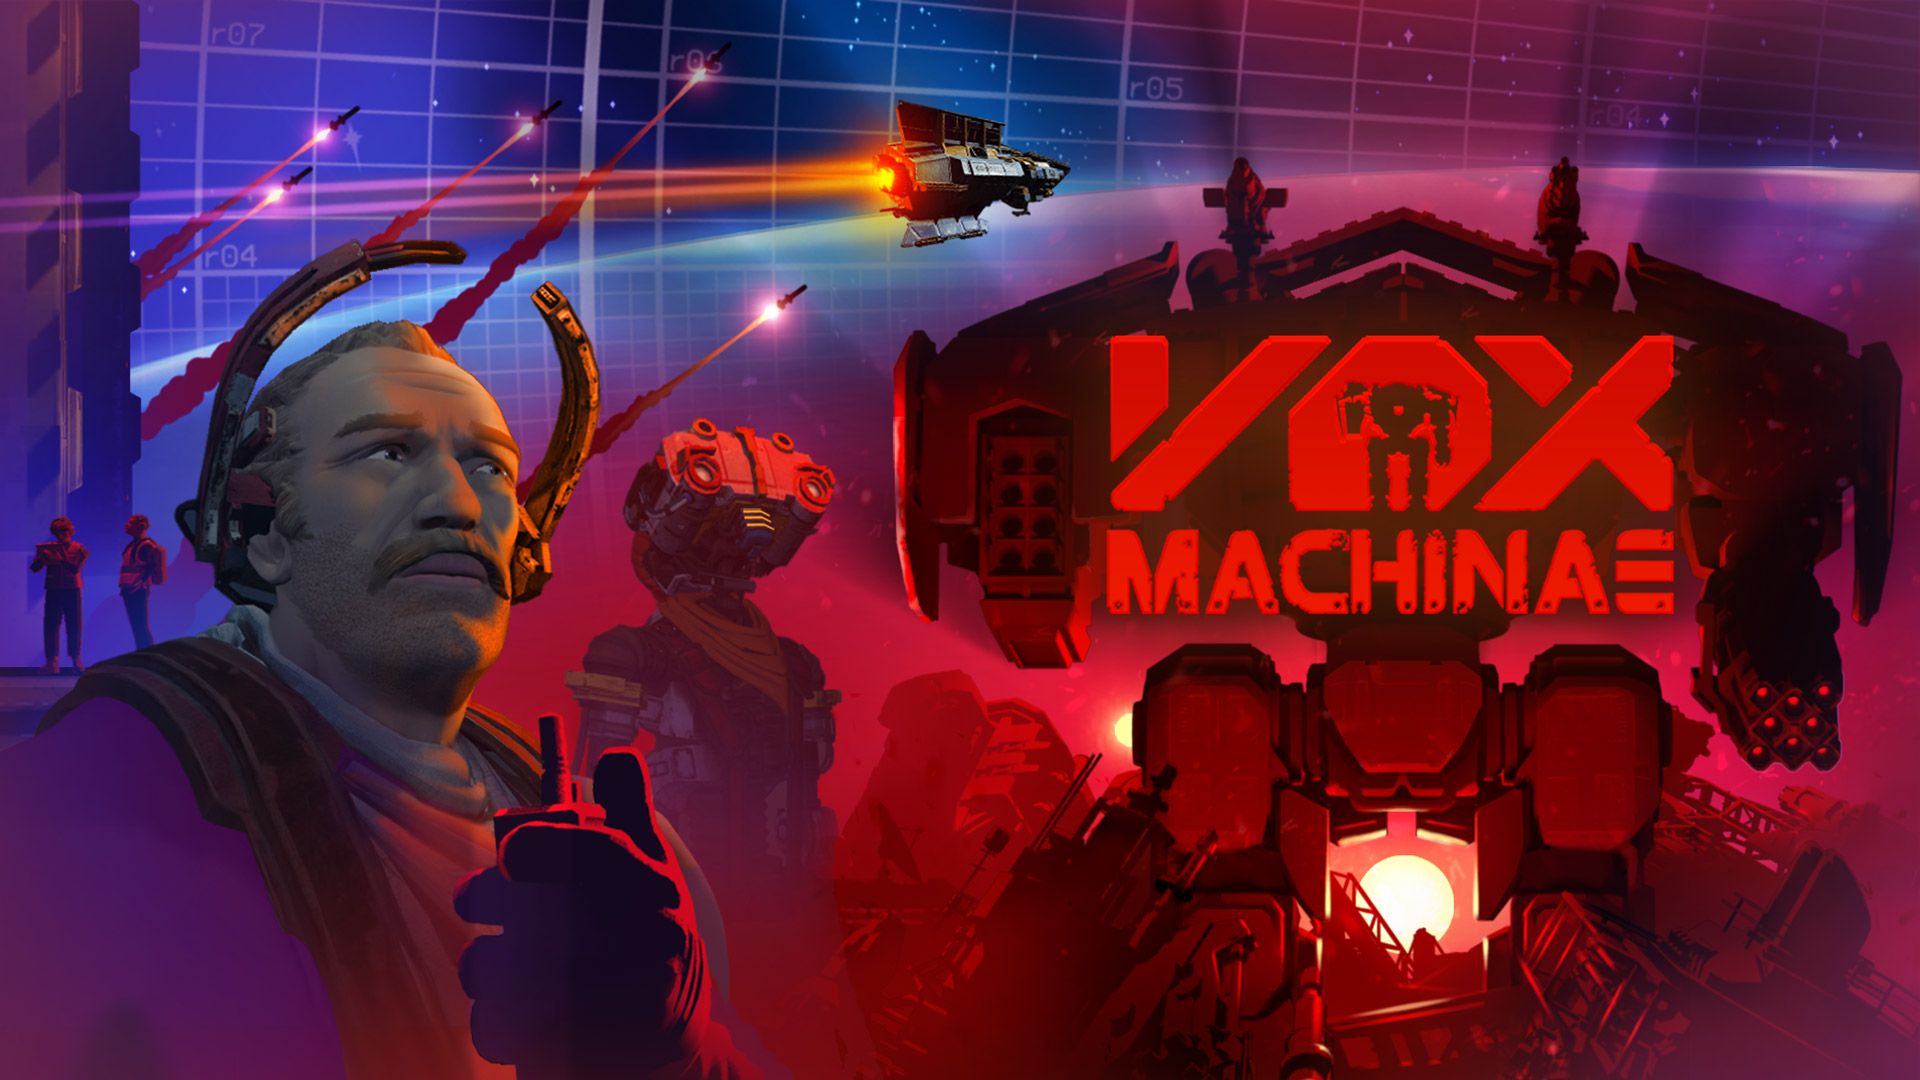 Mechsimulator Vox Machinae für Quest 2 erschienen und Test der neuen Kampagne